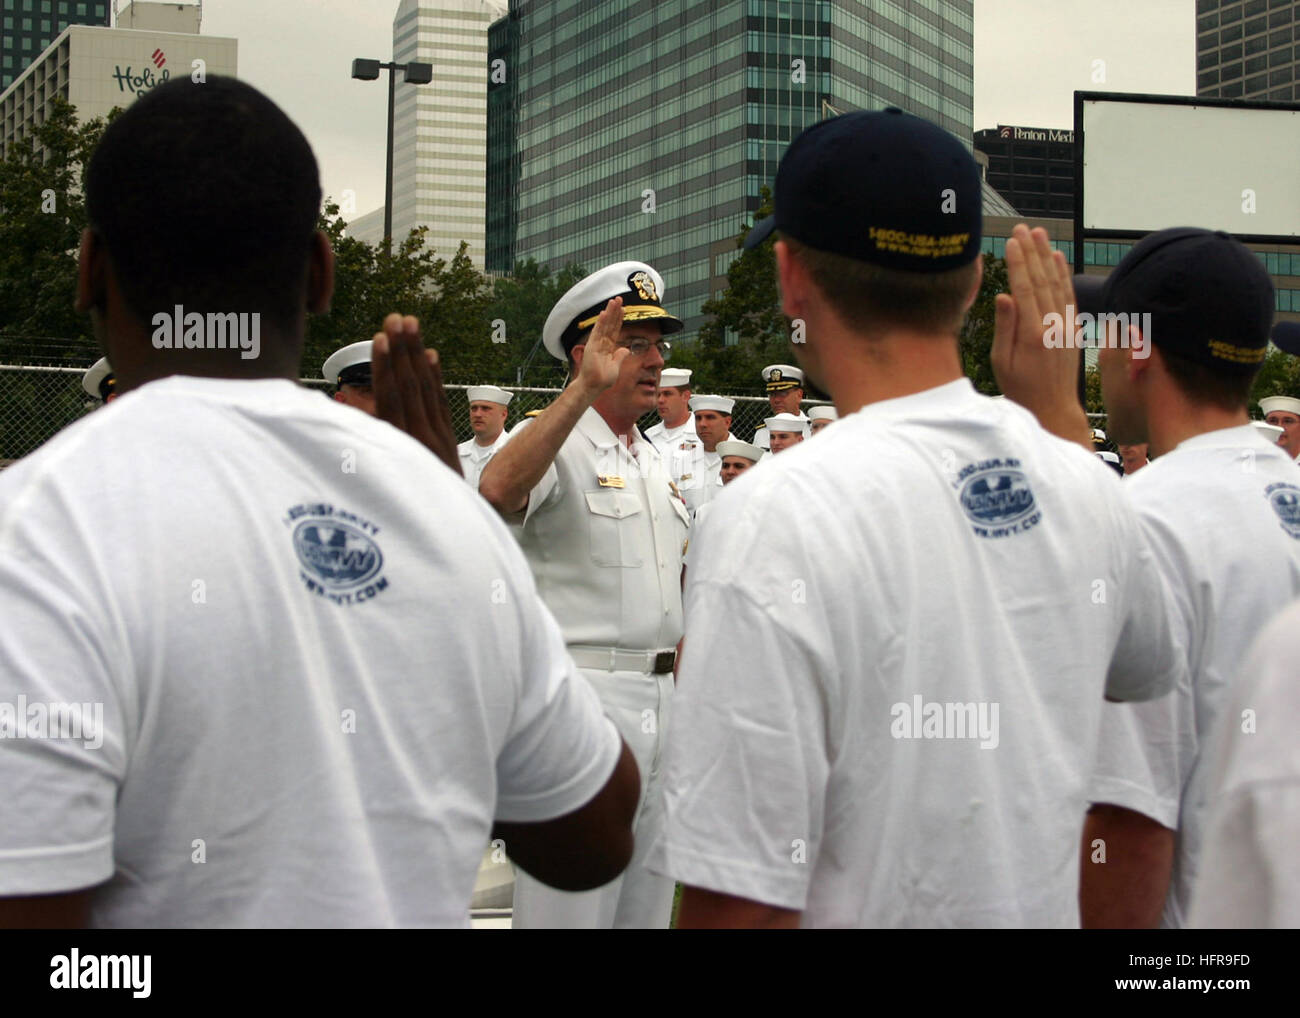 060829-N-7163S-006 Cleveland, Ohio (Agosto 29, 2006) - Capo del personale della Marina Vice Adm. John C. Harvey Jr. amministra il giuramento di arruolamento per la Marina il reclutamento di distretto (NRD) Ohio ritardato il programma di immissione (DEP) reclute nel corso di una cerimonia svoltasi presso la USS COD museum lungo le rive del Lago Erie. Harvey ha viaggiato a Cleveland a prendere parte in Cleveland Navy settimana di festeggiamenti. Ventisei Marina tali settimane sono previste quest'anno in città durante gli Stati Uniti, disposto dalla Marina Militare Ufficio di comunicazione alla comunità (NAVCO). La missione di NAVCO è quello di migliorare la marina di immagine di marchio in aree con esposizione limitata a Foto Stock